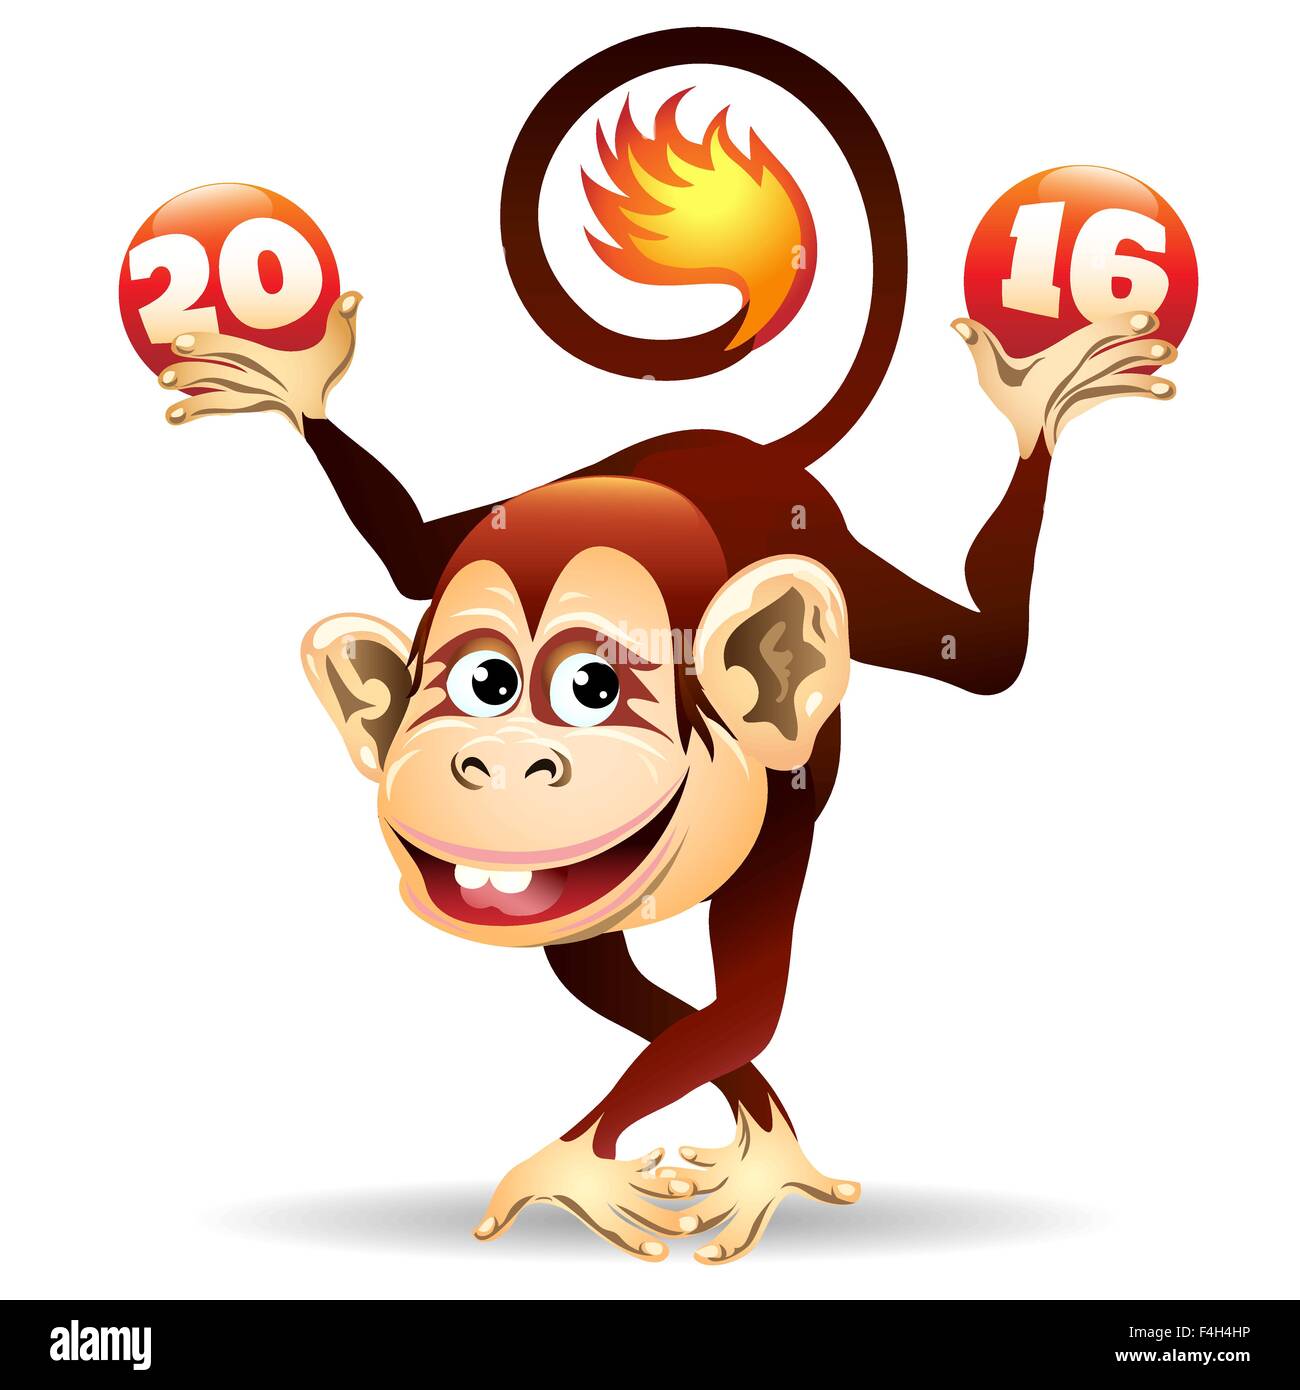 Symbol für 2016 Jahr Feuer Monkey.Cartoon Abbildung. Isoliert auf weiss. Stock Vektor